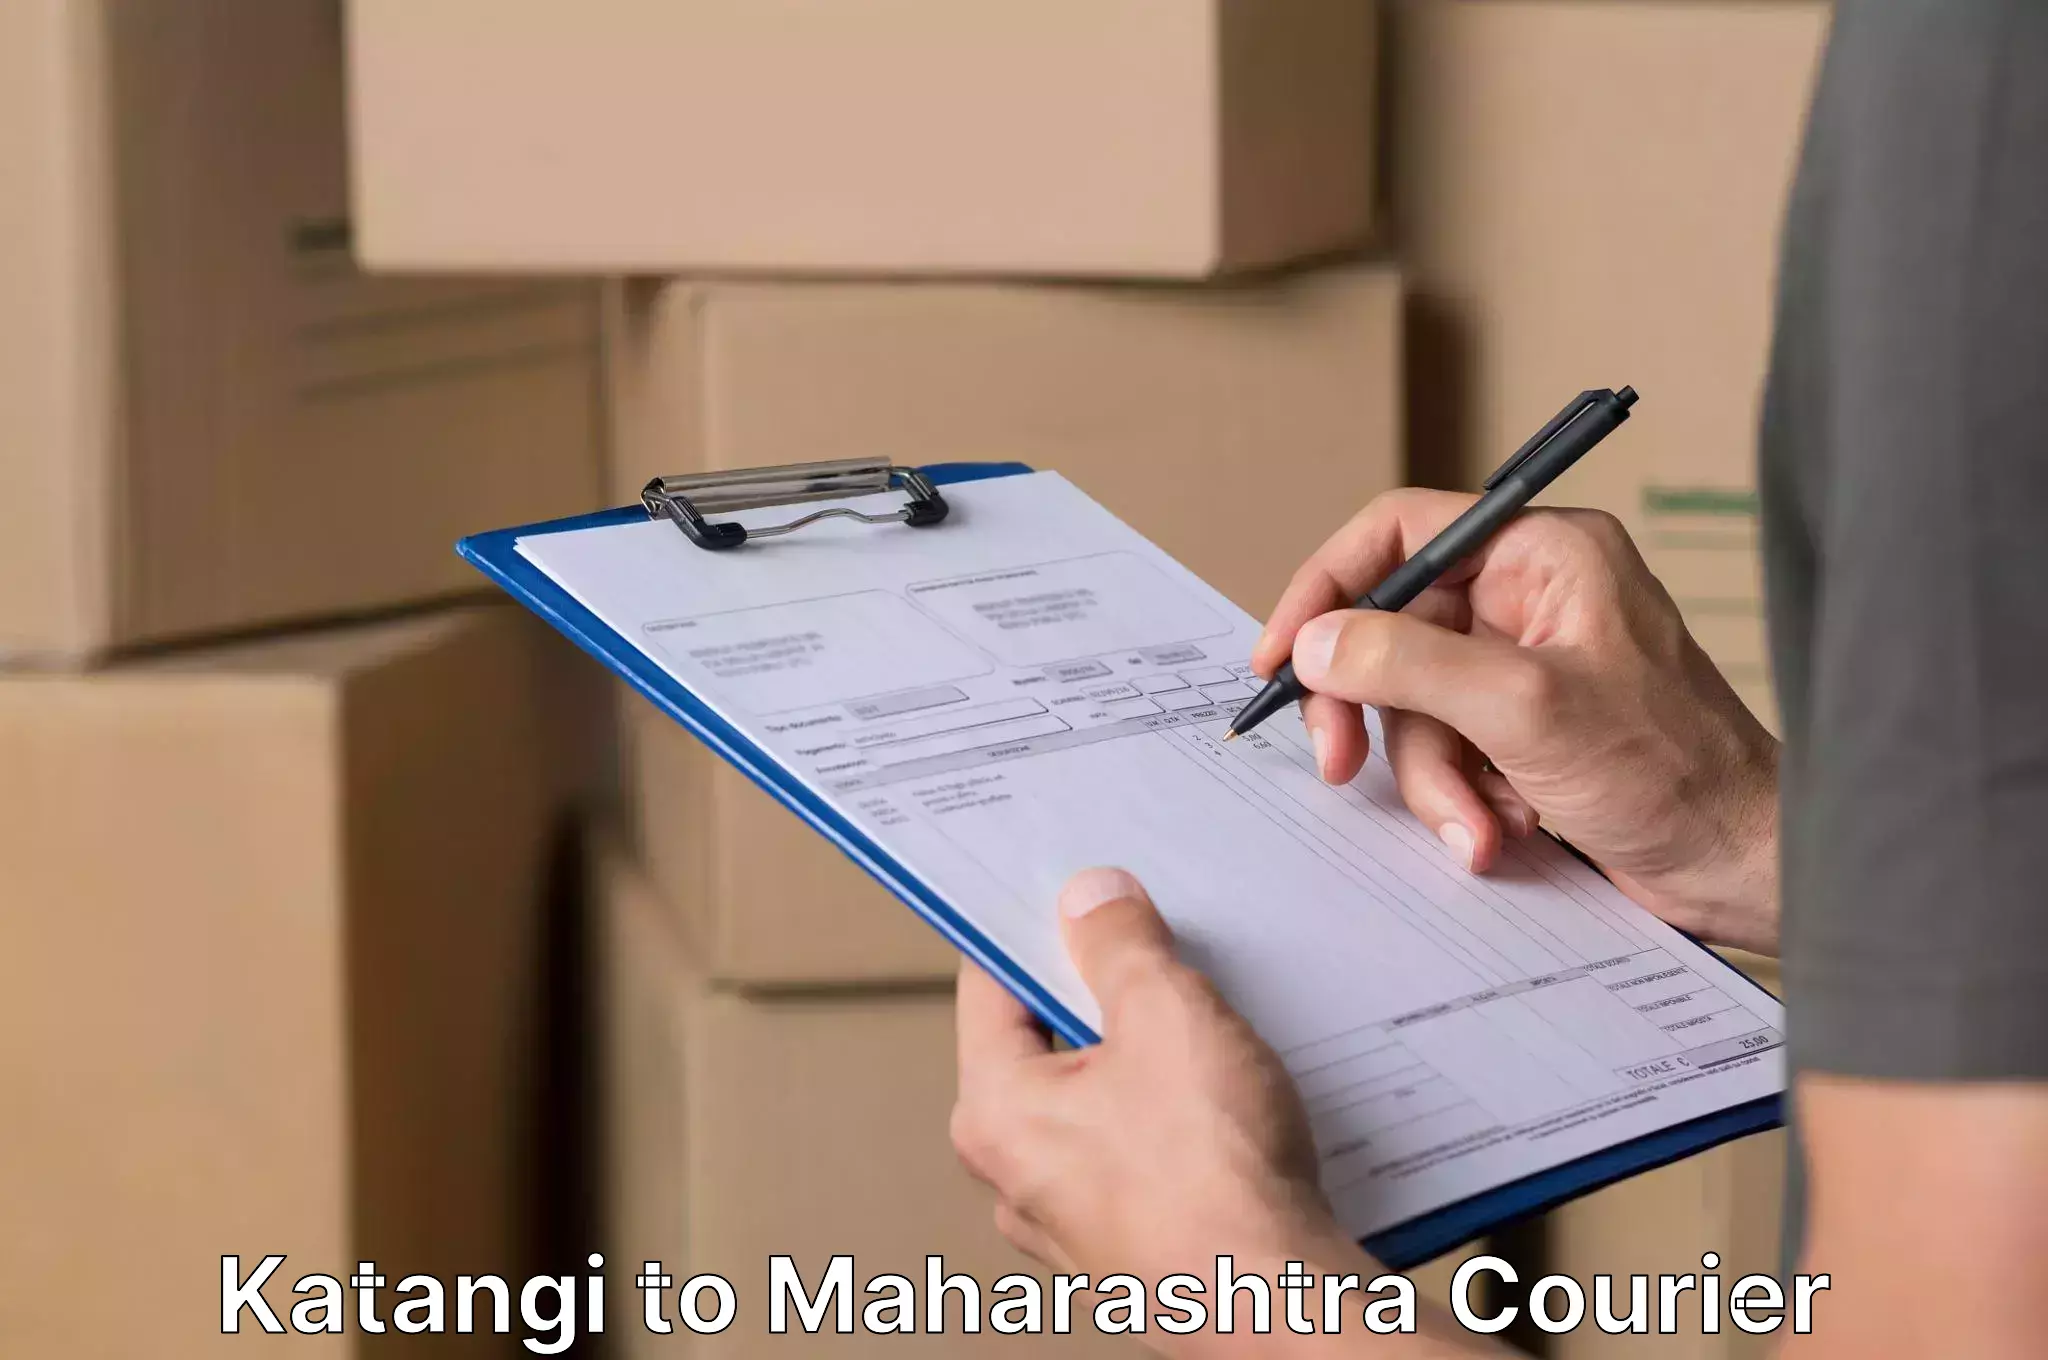 Expert furniture movers Katangi to Maharashtra